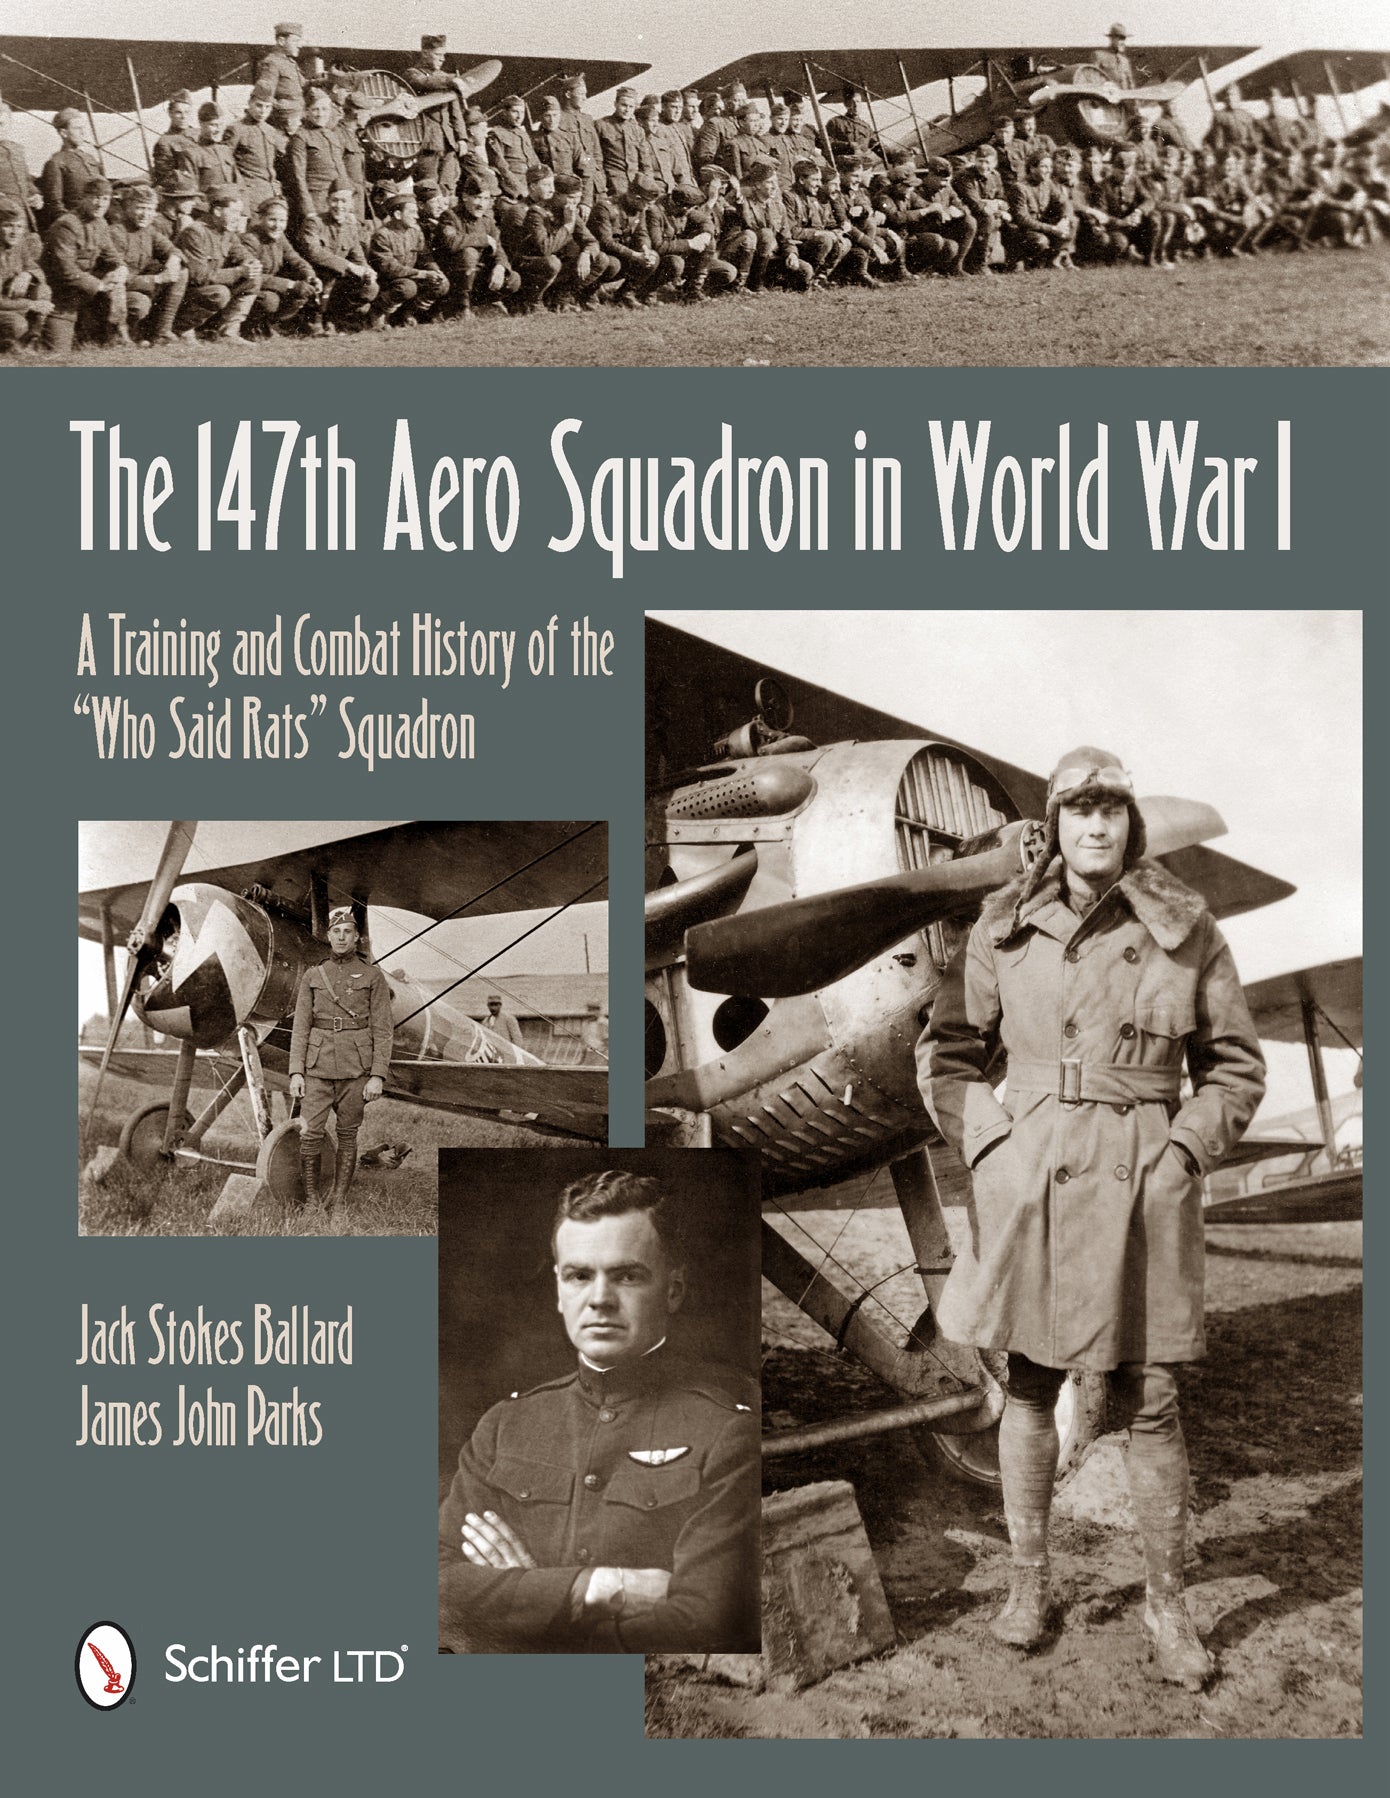 The 147th Aero Squadron in World War I